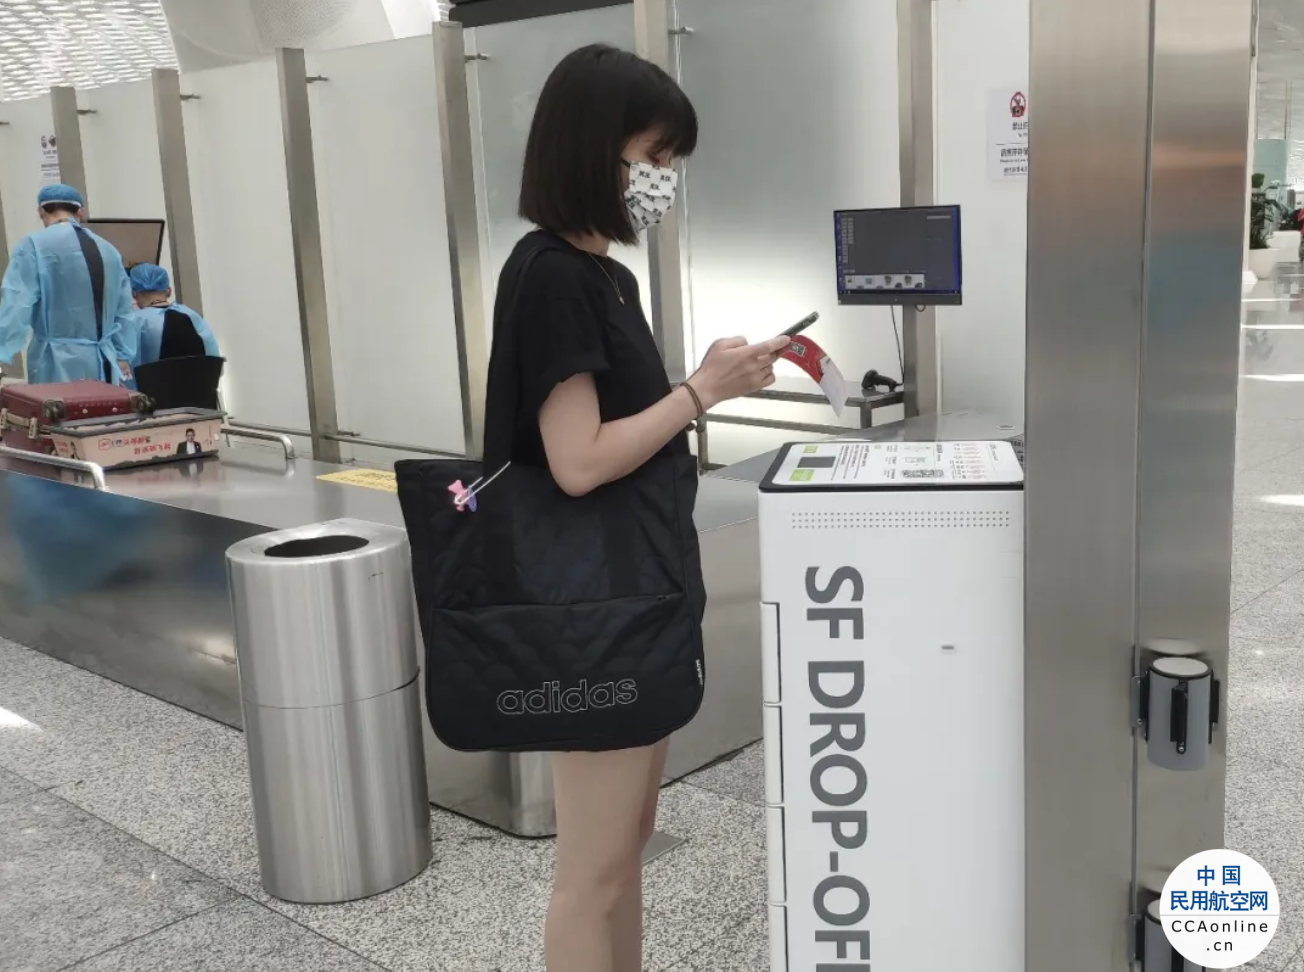 深圳机场投入自助快递机，不能带上飞机的物品可自行邮寄